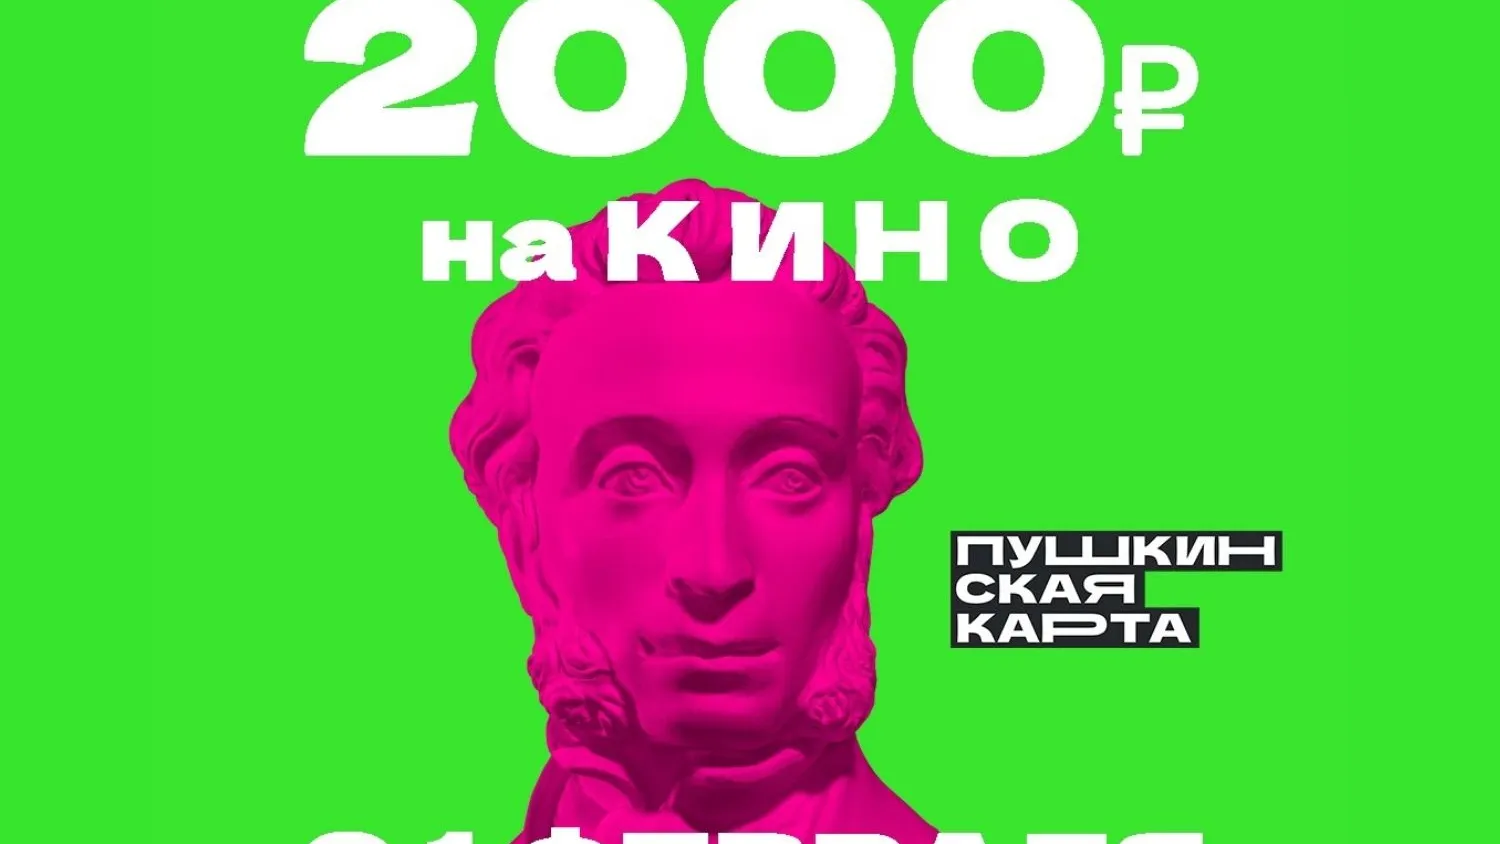 Инфографика: официальная страница «Пушкинской карты», «ВКонтакте»